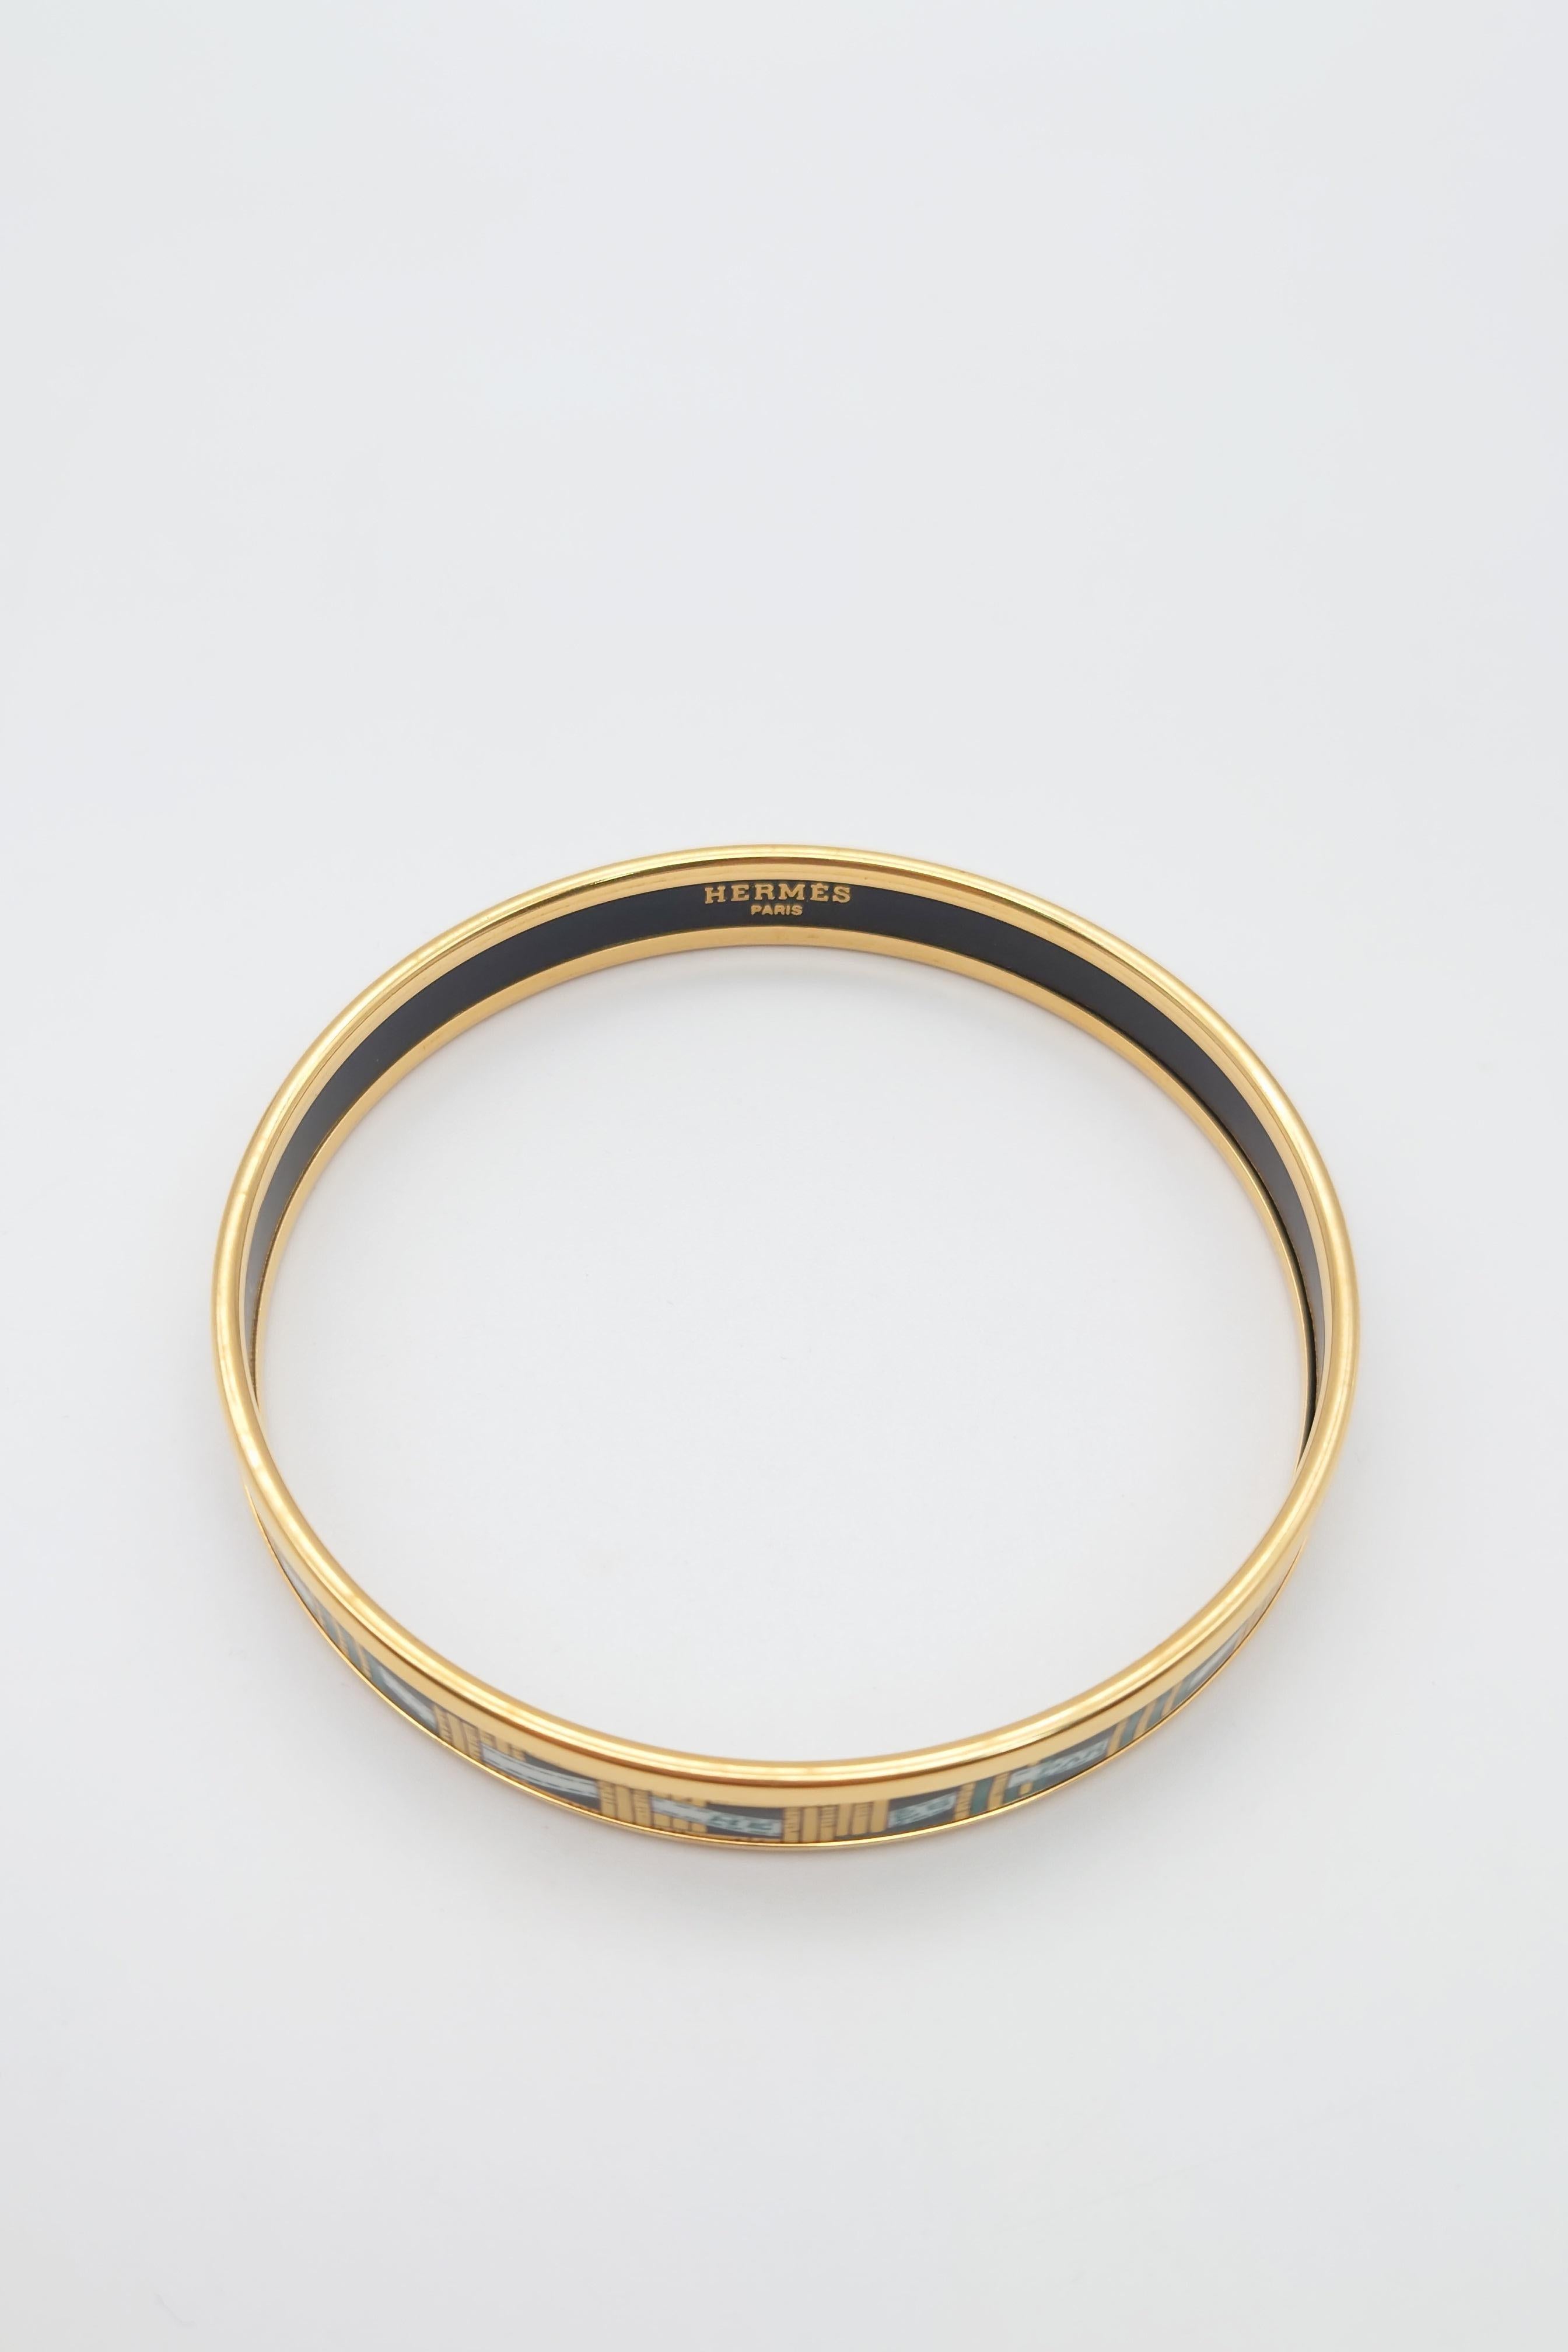 Authentic Hermes Bracelet Vintage Enamel Bangle ”Band” For Sale 3